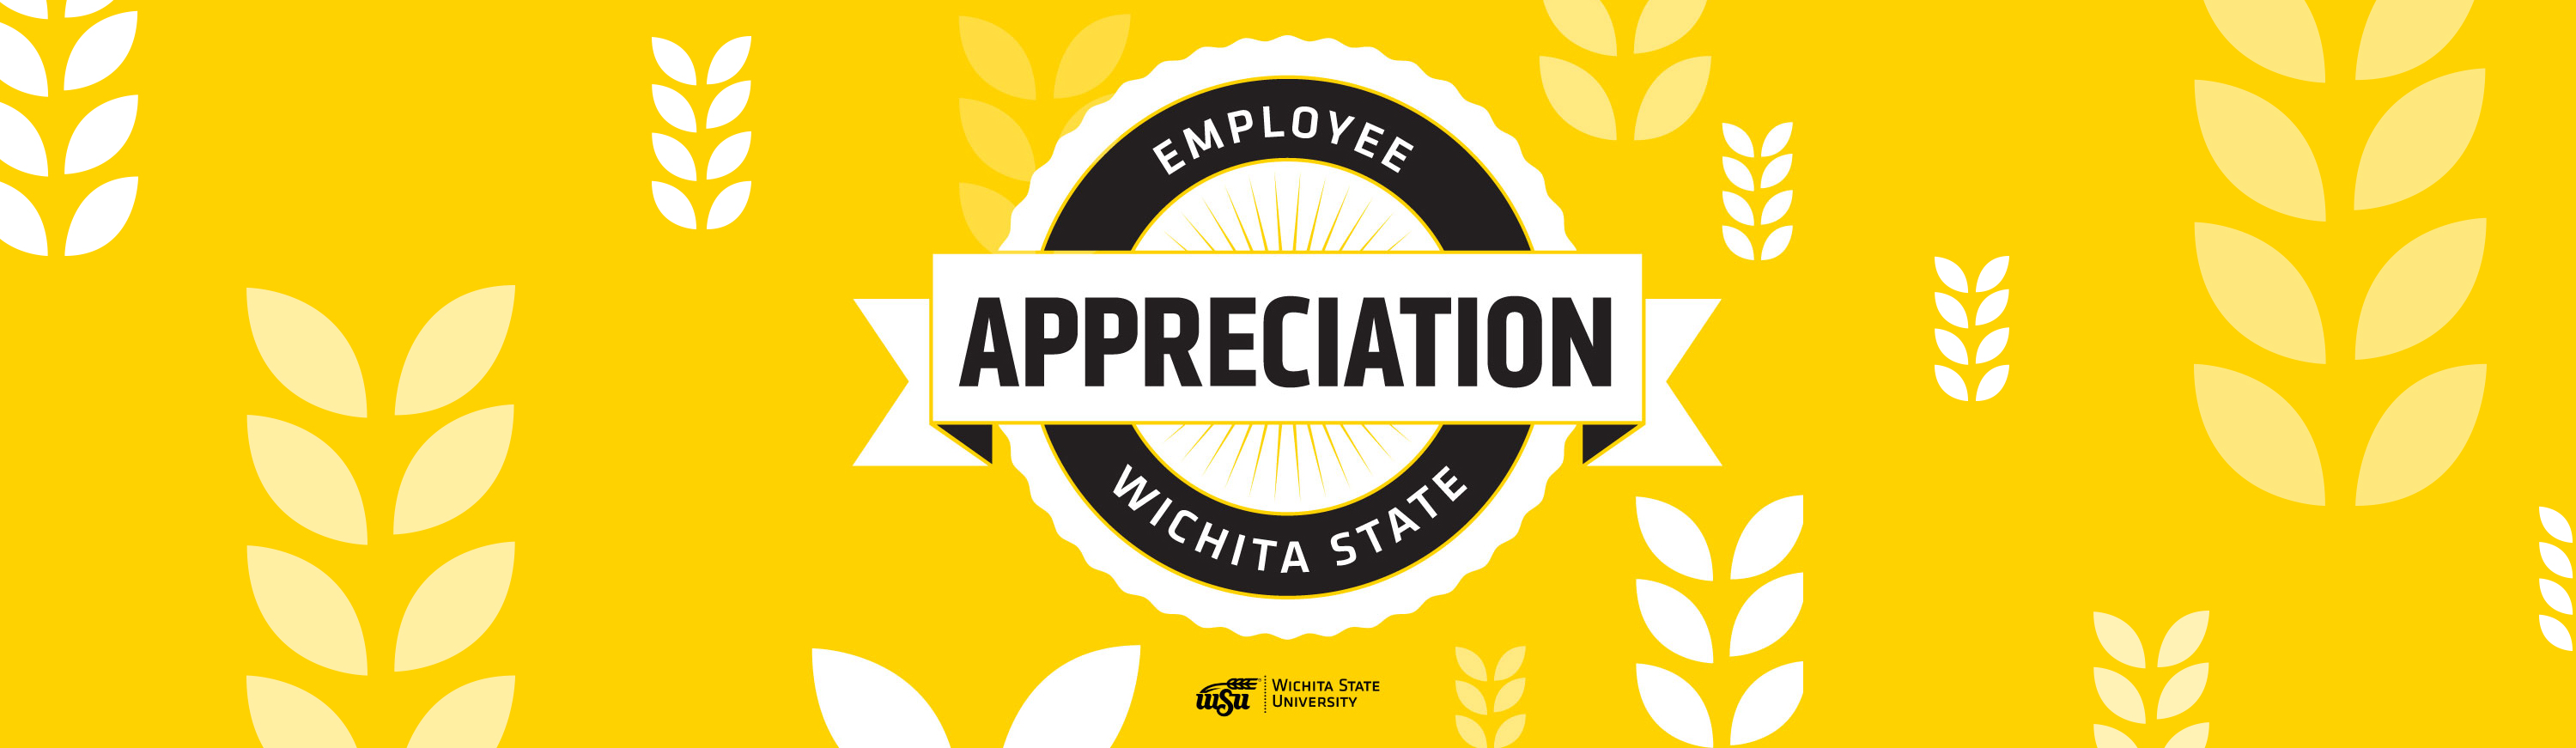 Employee Appreciation day header